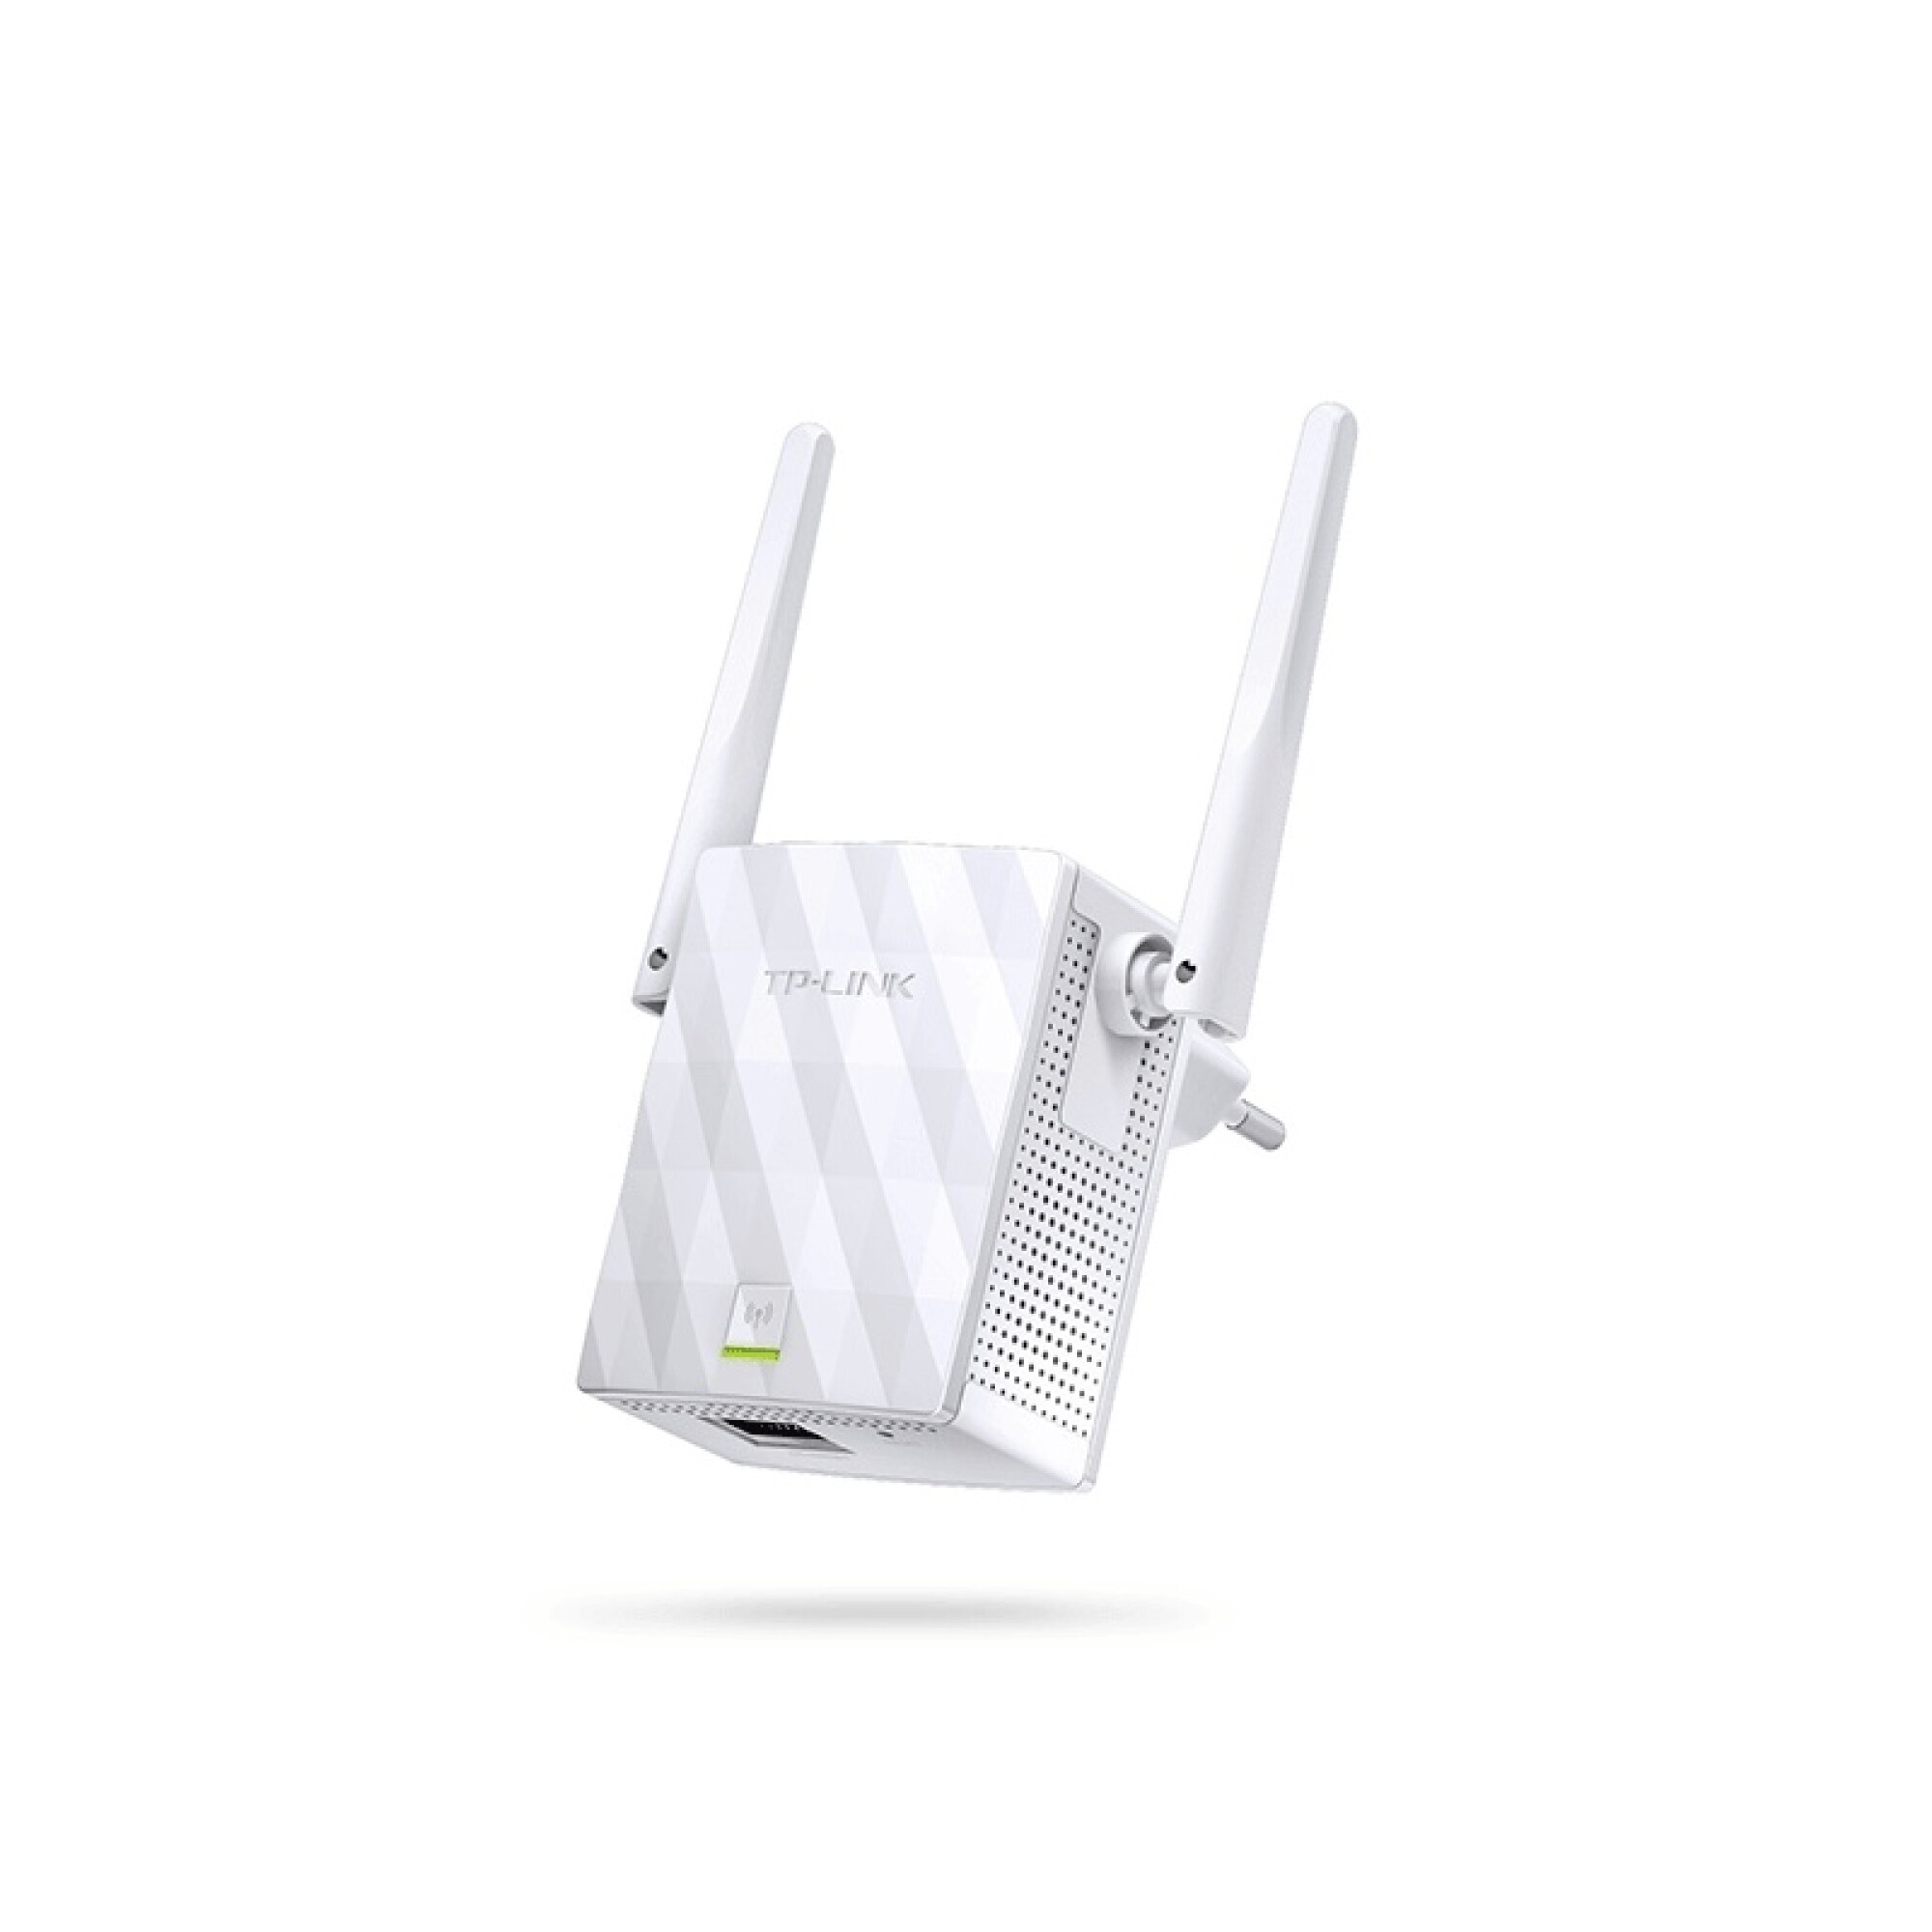 TL-WA855RE, Extensor de Rango Wi-Fi 300Mbps